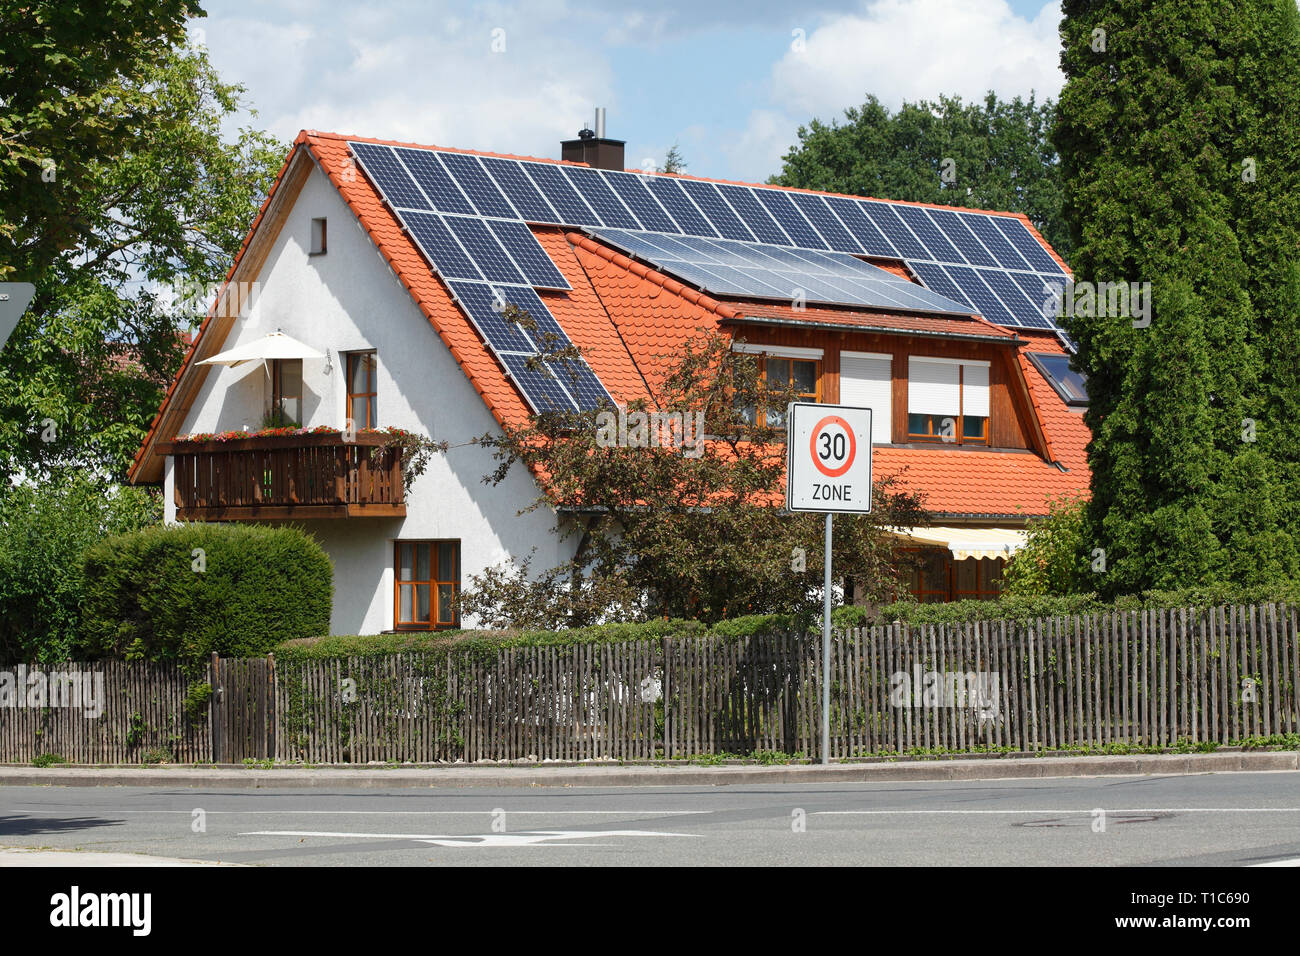 Wohnhaus mit Solardach Bayreuth, Bayern, Deutschland, Europa ich Wohnhaus mit Solardach Bayreuth, Bayern, Deutschland, Europa i Stockfoto